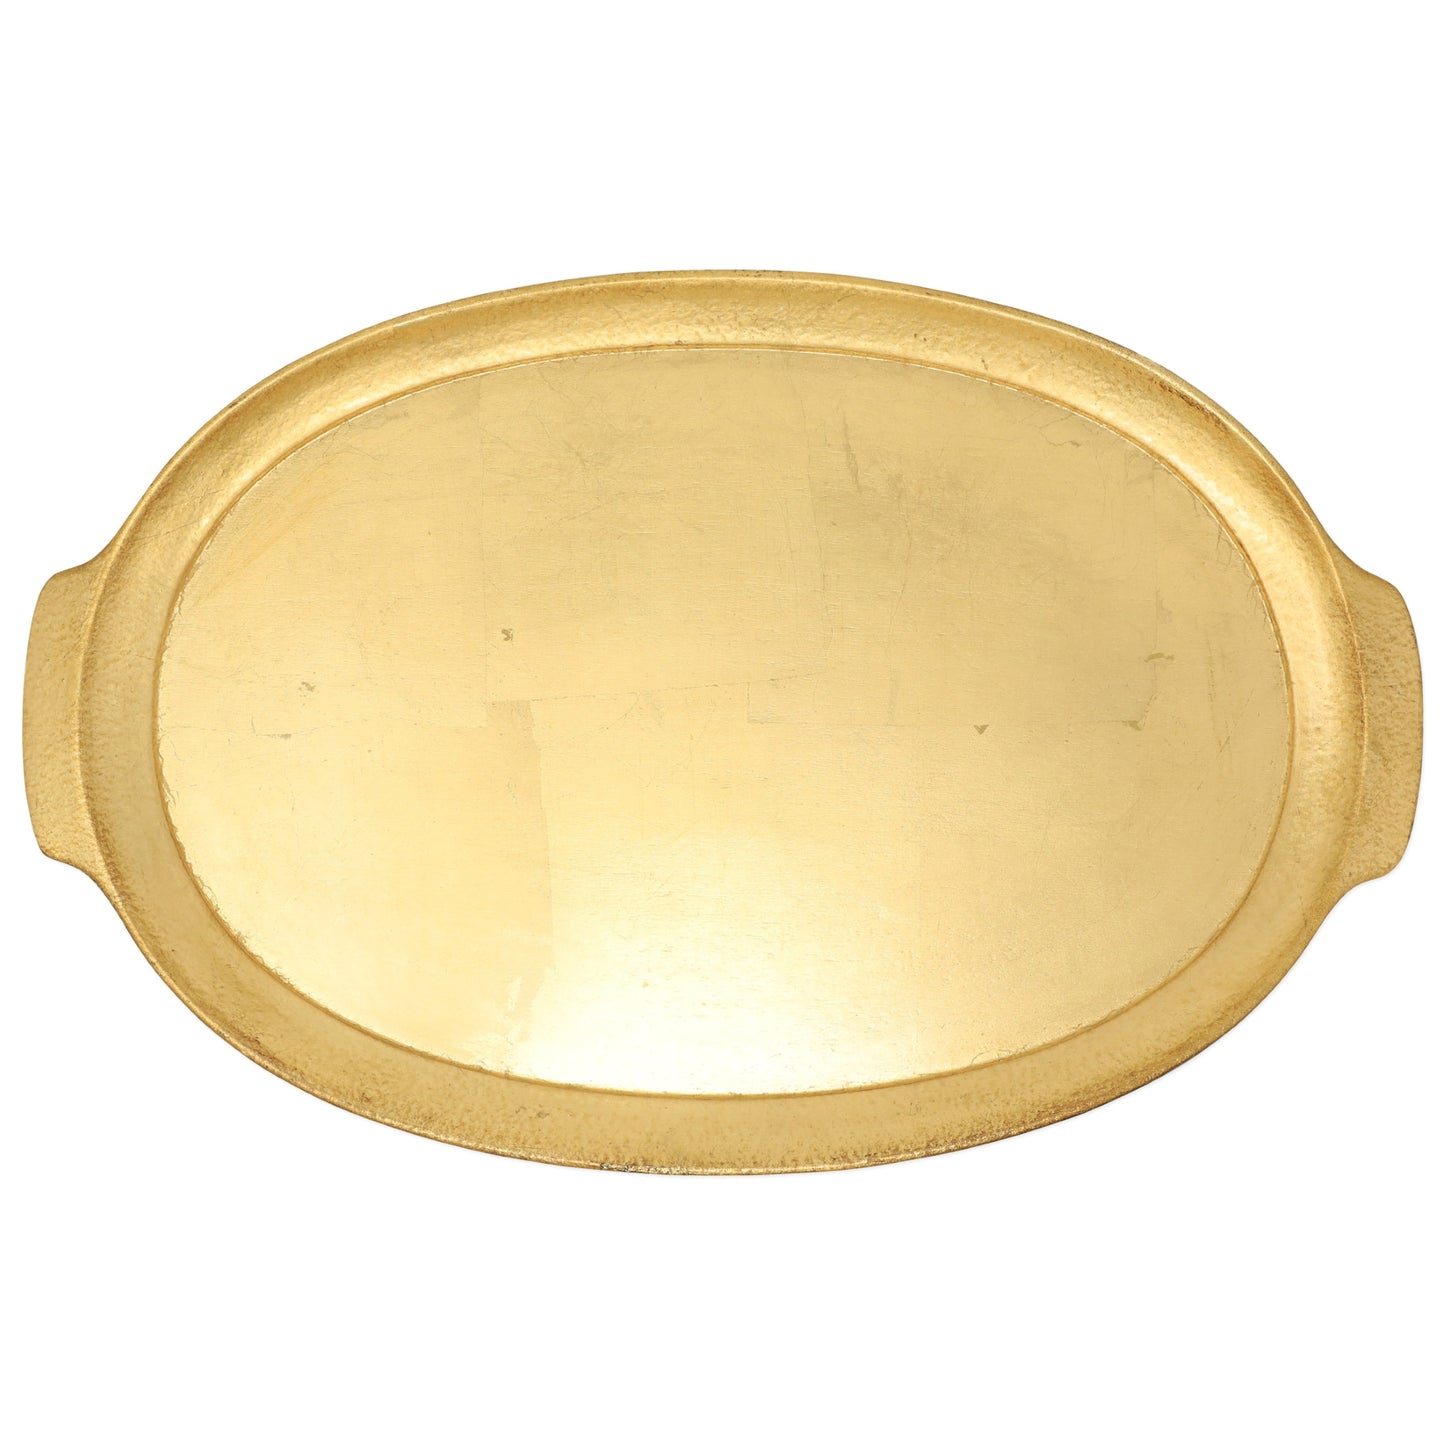 Vietri Florentine Wooden Accessories Gold Handled Medium Oval Tray, Birchwood